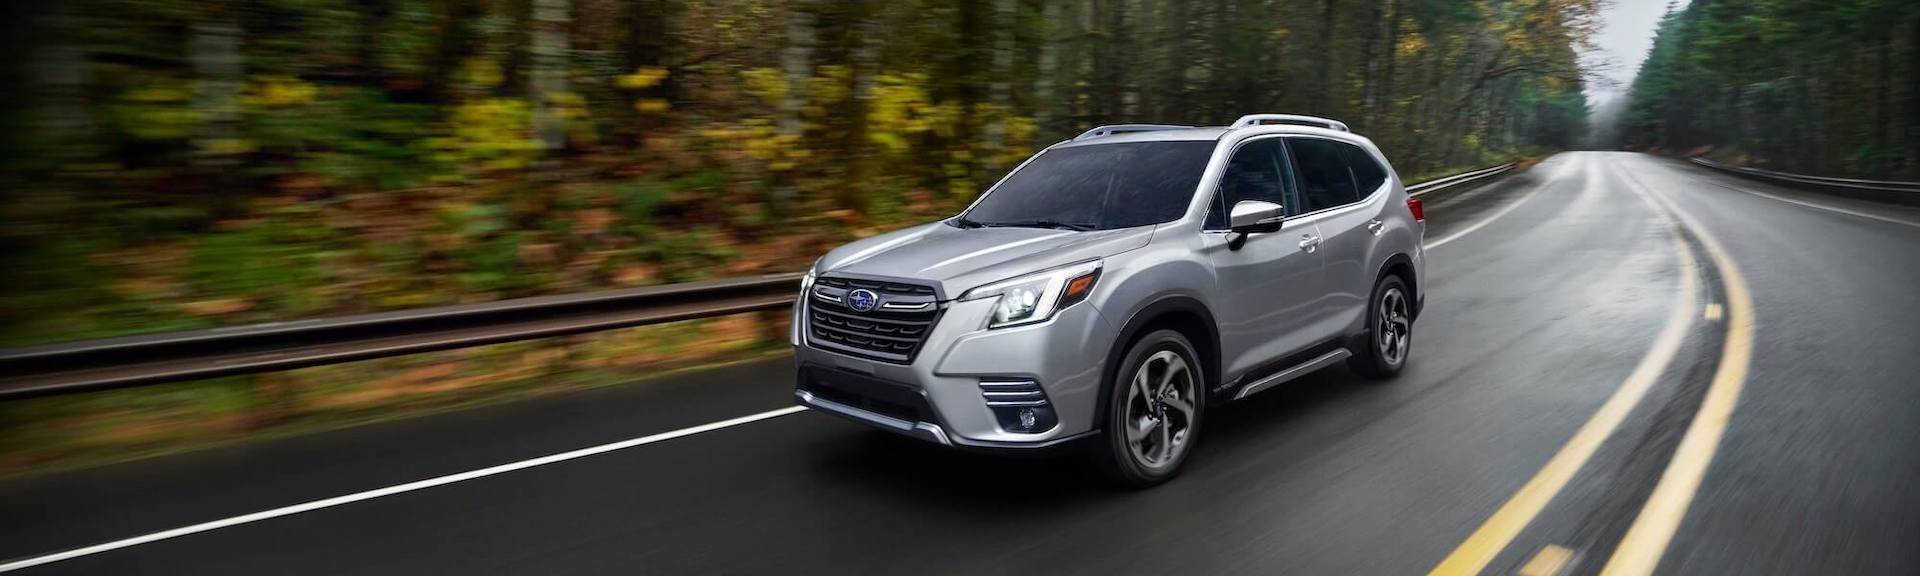 Subaru Forester d’occasion à vendre à Québec